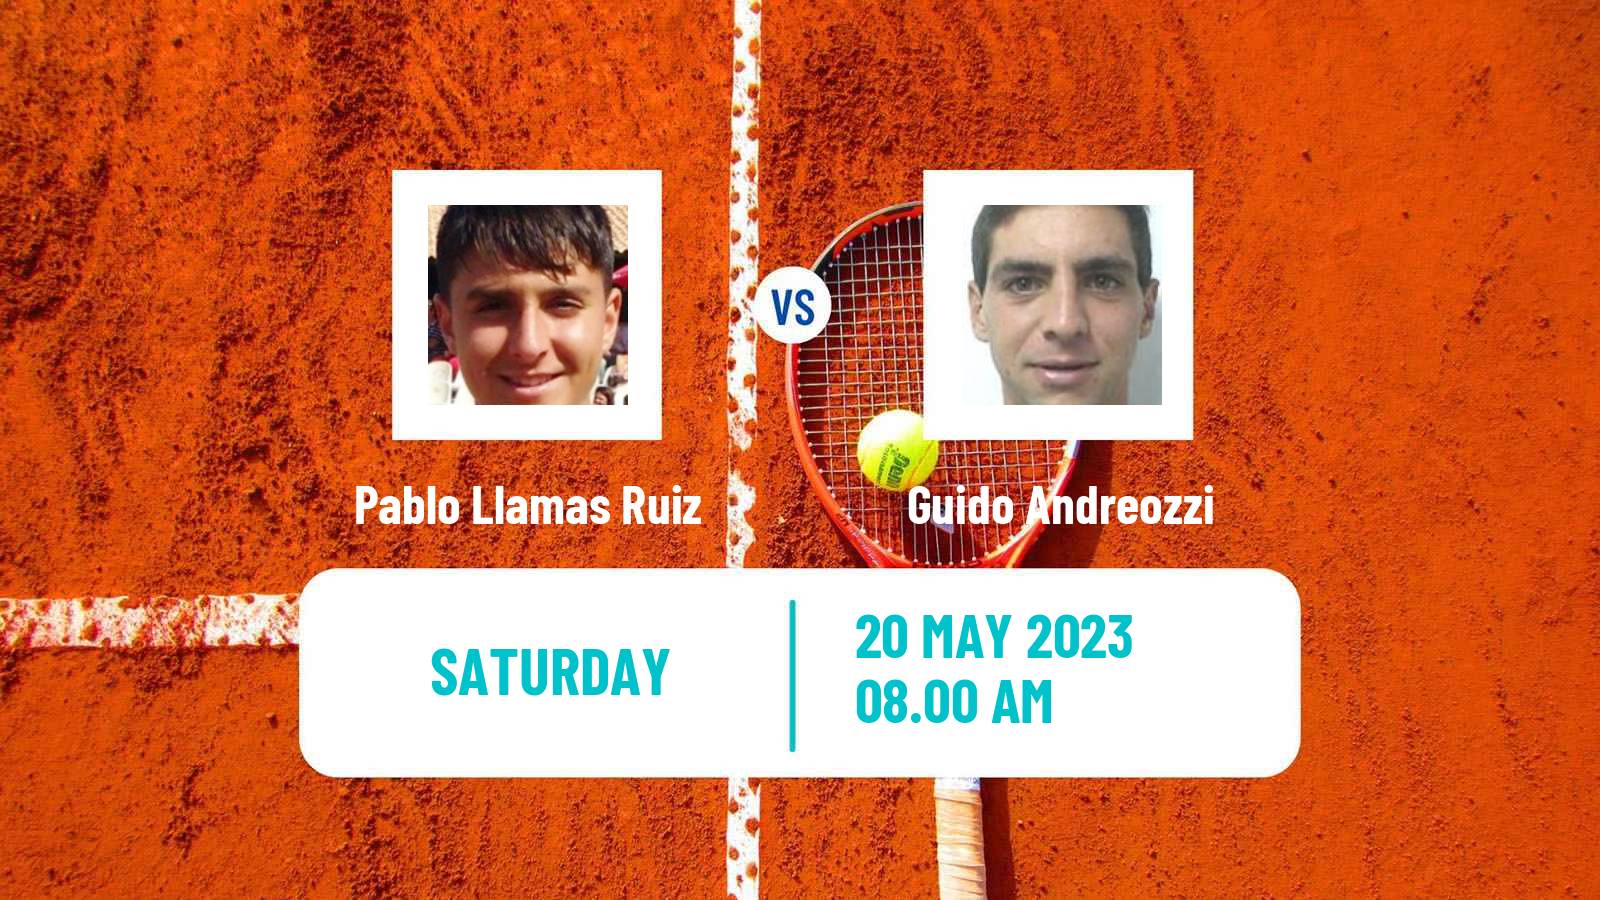 Tennis ATP Lyon Pablo Llamas Ruiz - Guido Andreozzi